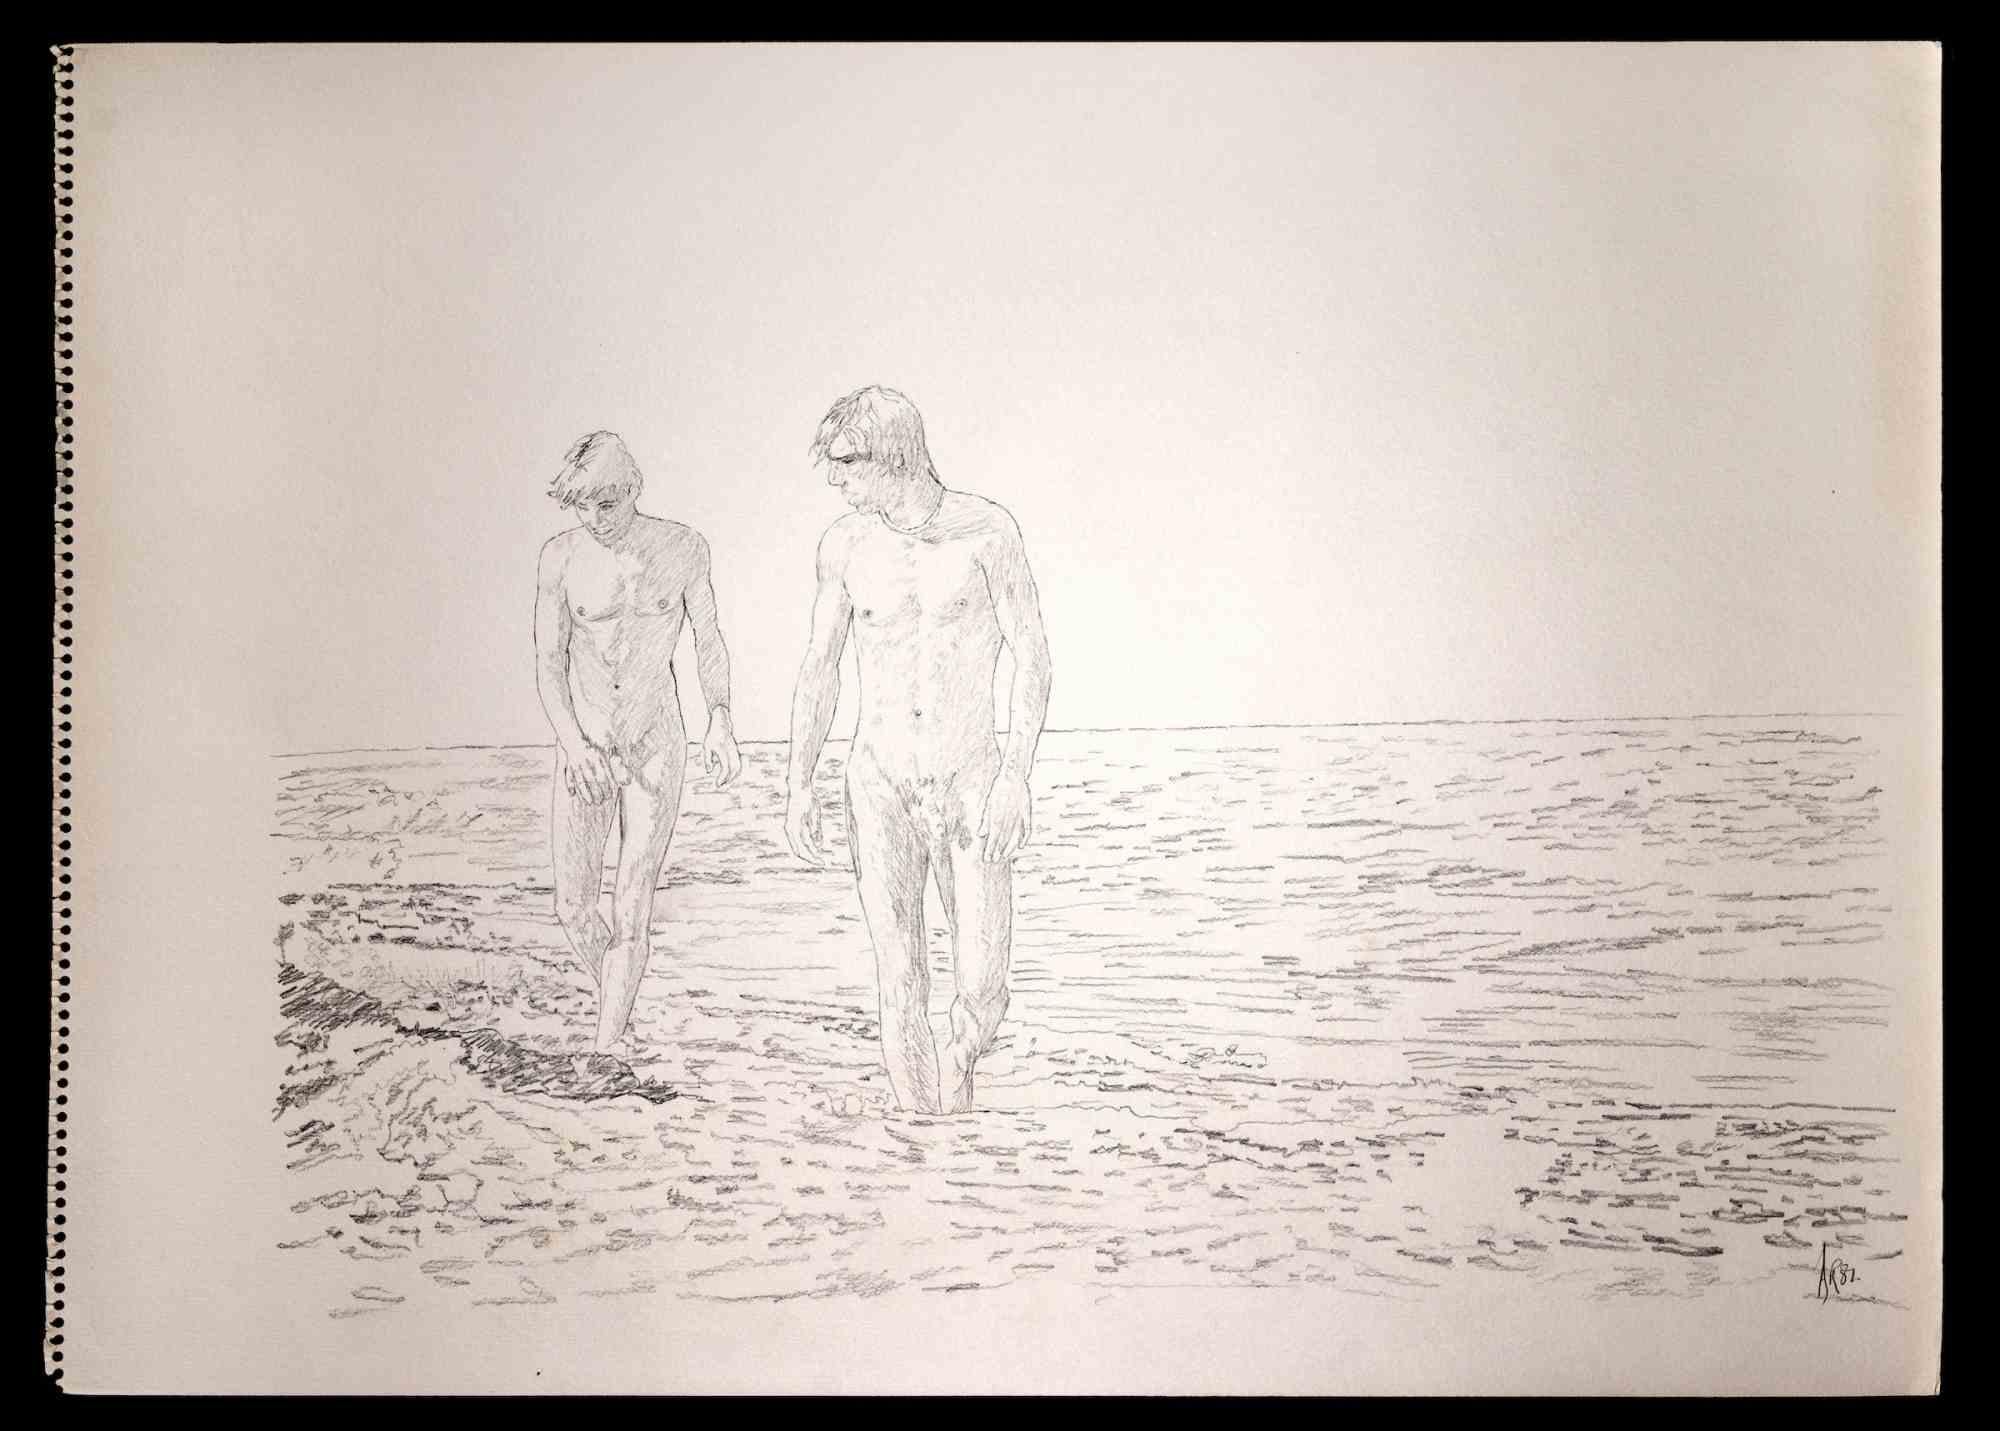 Zwei Freunde, die am Strand spazieren gehen, ist eine Originalzeichnung mit Bleistift von Anthony Roaland aus dem Jahr 1981. Handsigniert und datiert vom Künstler am unteren rechten Rand. 

Die Männer werden in einem frischen und zarten Stil